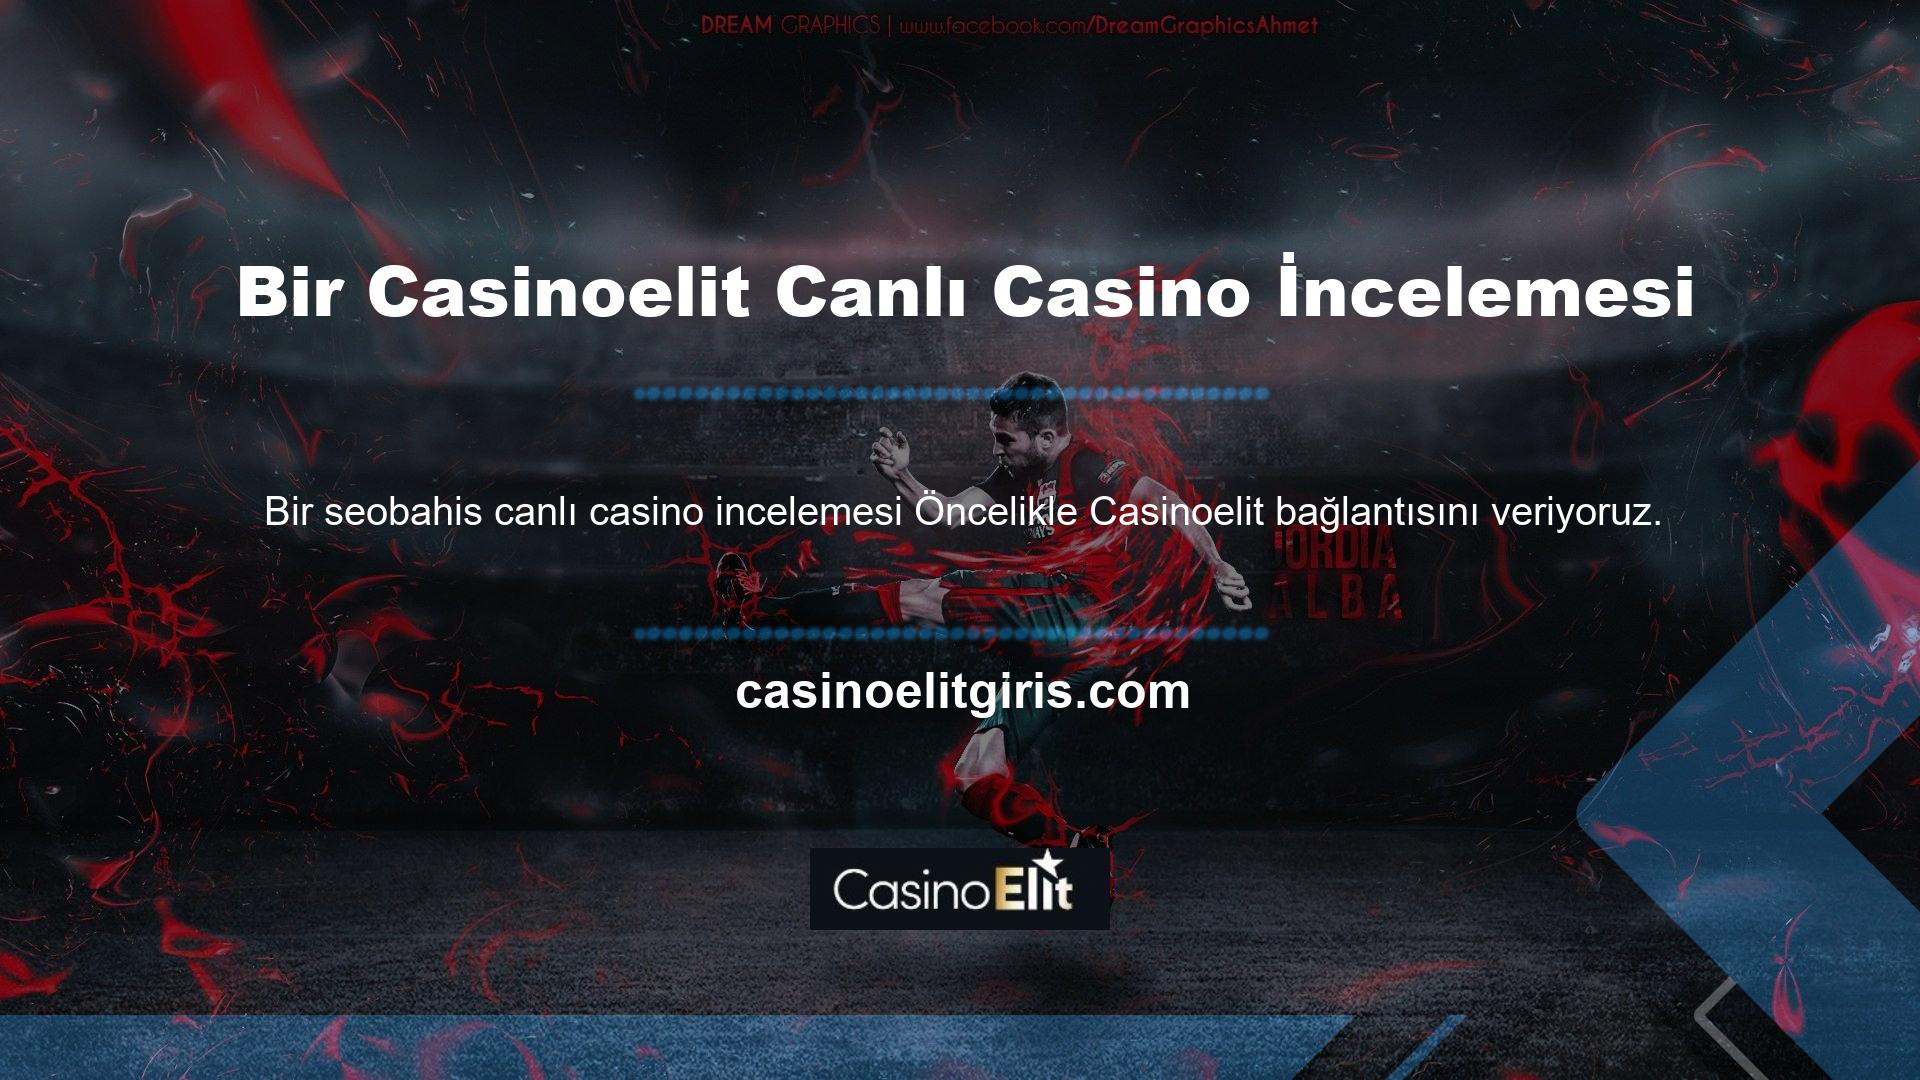 Bahis seçenekleri bölümünde canlı casino bölümü bulunmaktadır